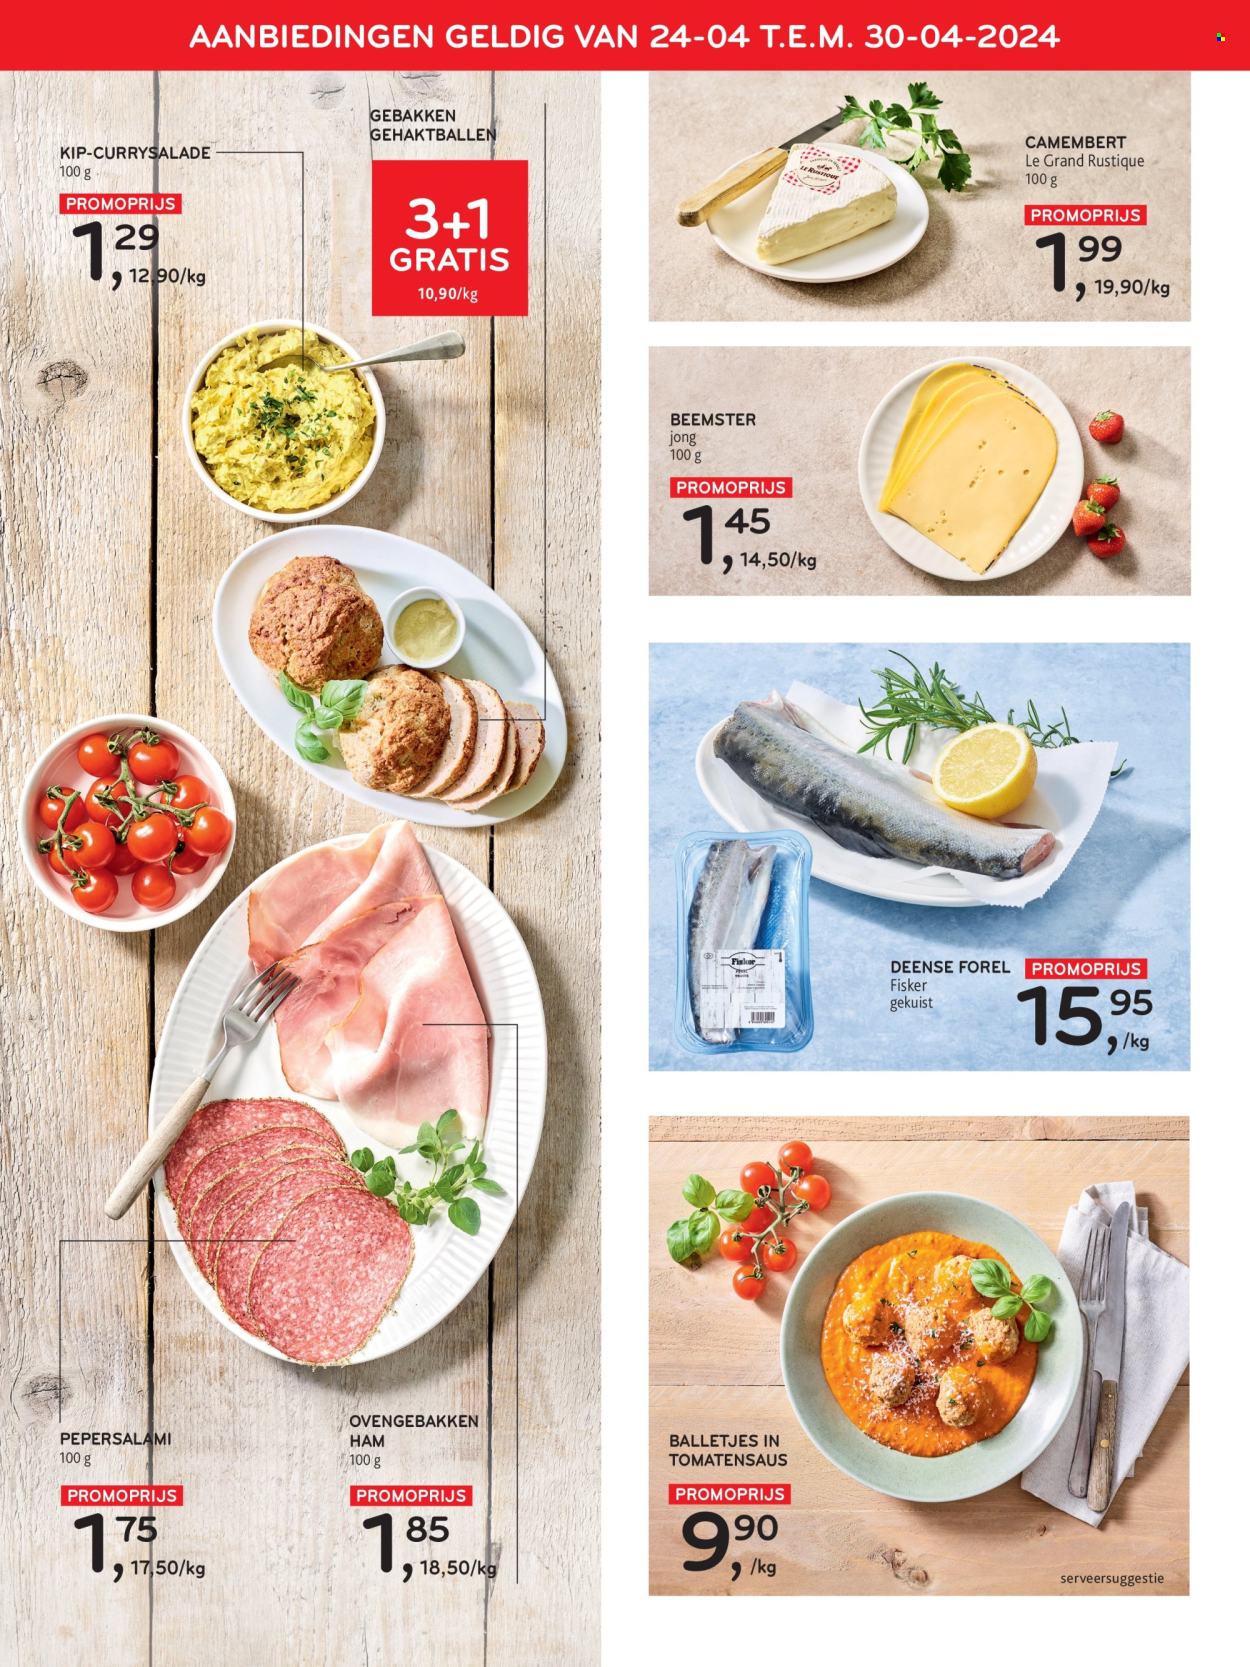 thumbnail - Alvo-aanbieding - 24/04/2024 - 07/05/2024 -  producten in de aanbieding - kip, forel, gehaktballen, ham, Camembert. Pagina 2.